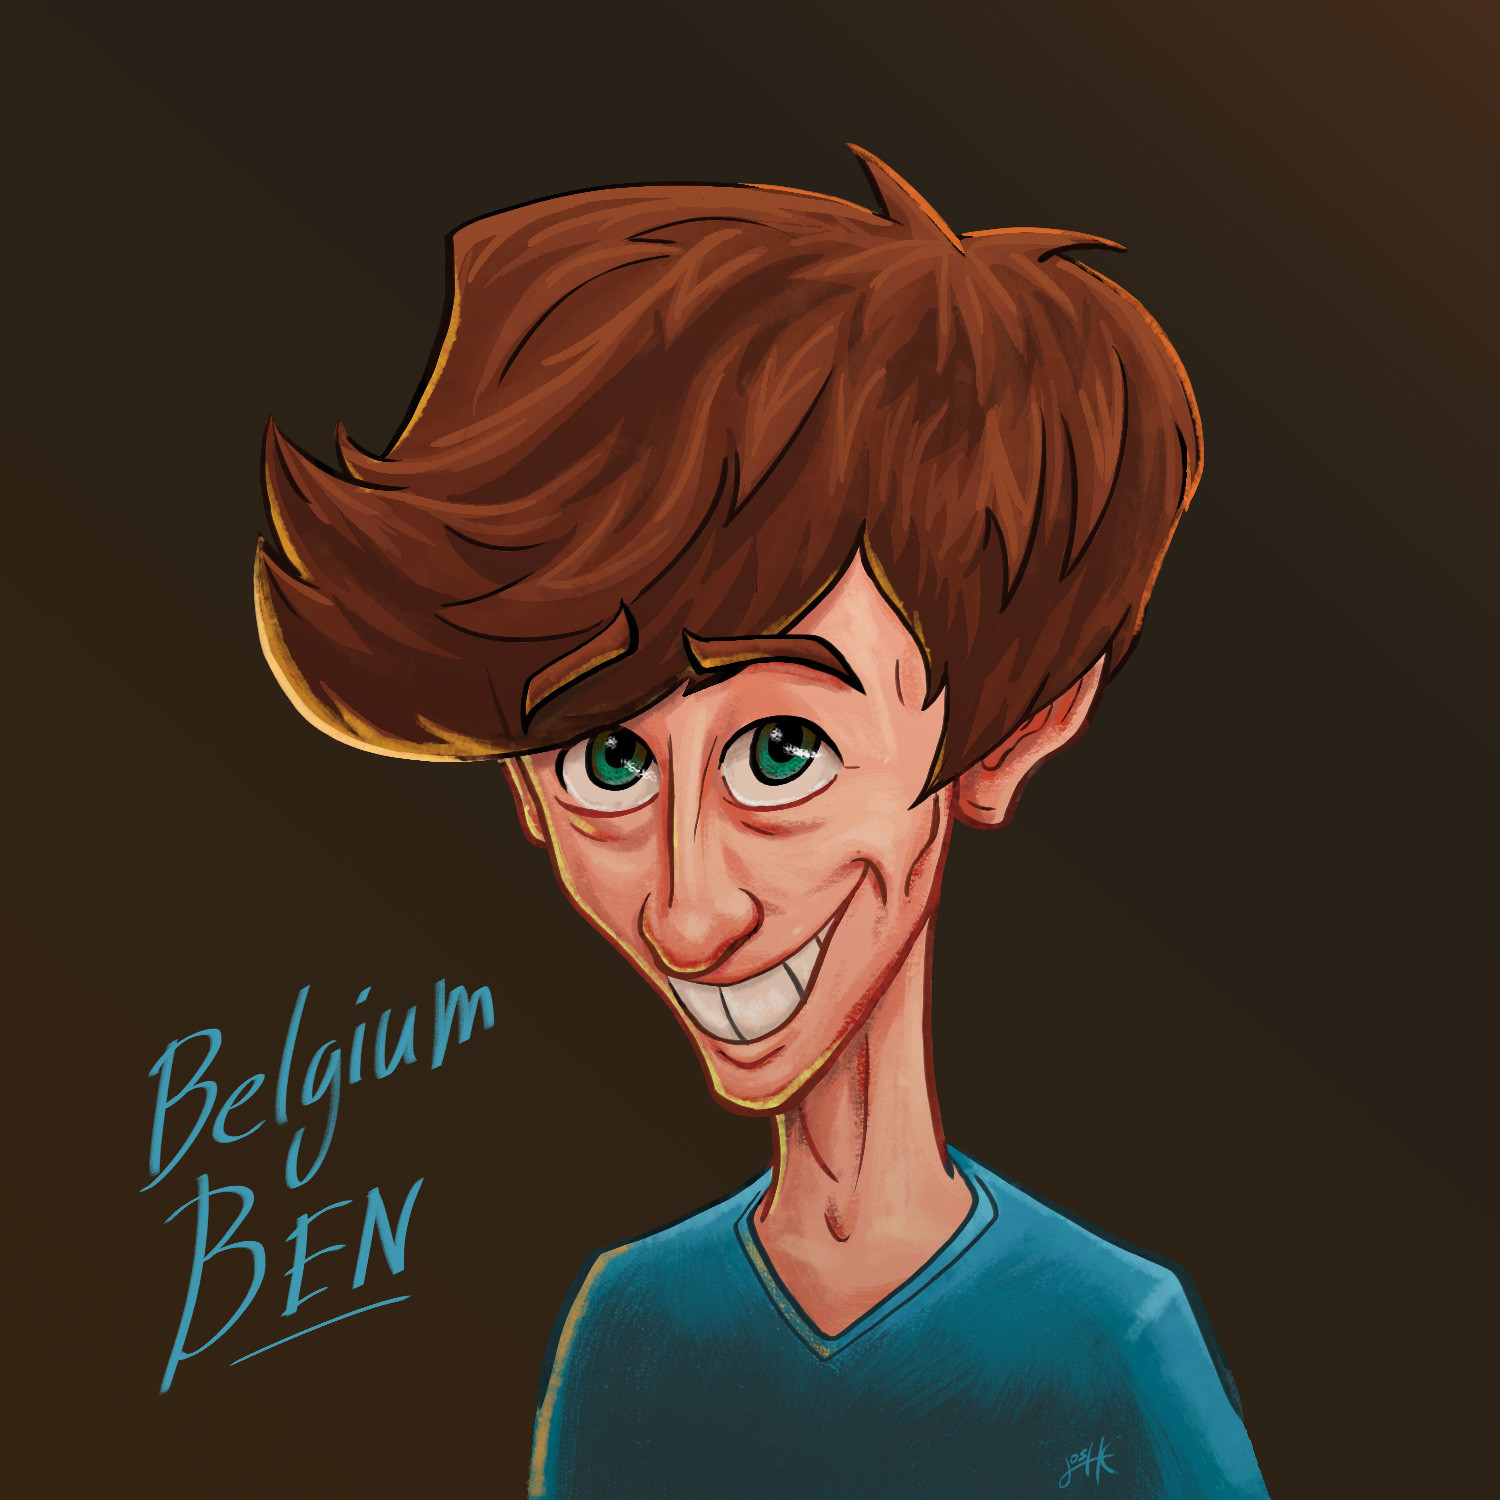 Belgium Ben - Caricature Portrait